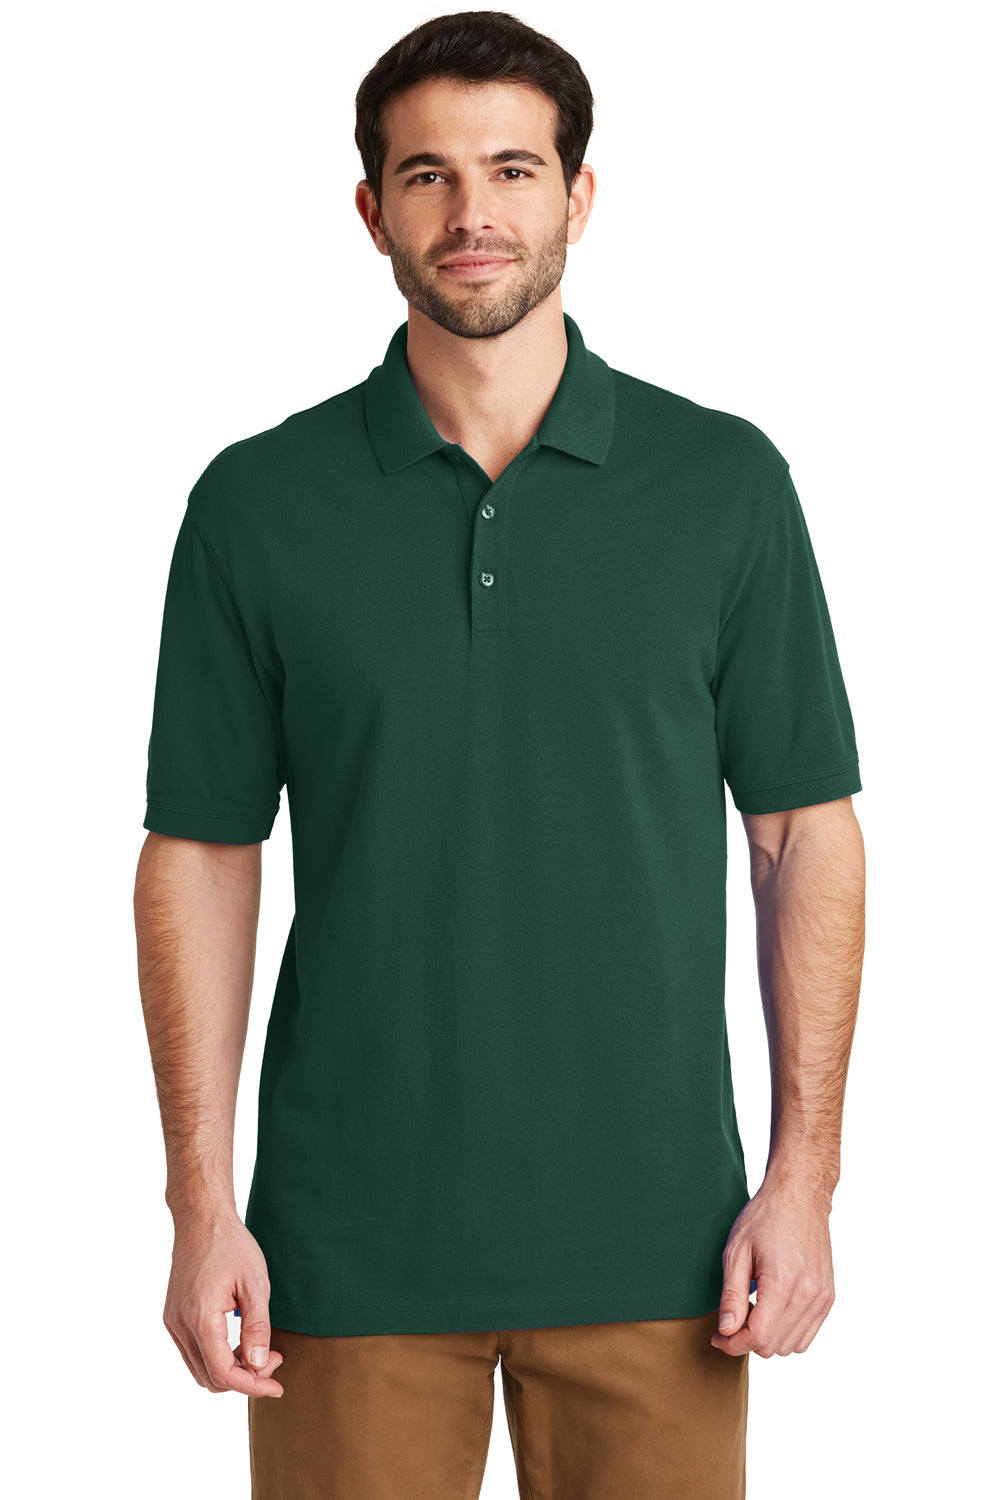 Port Authority K8000 Mens Wrinkle Resistant Short Sleeve Polo Shirt Glen Green Front